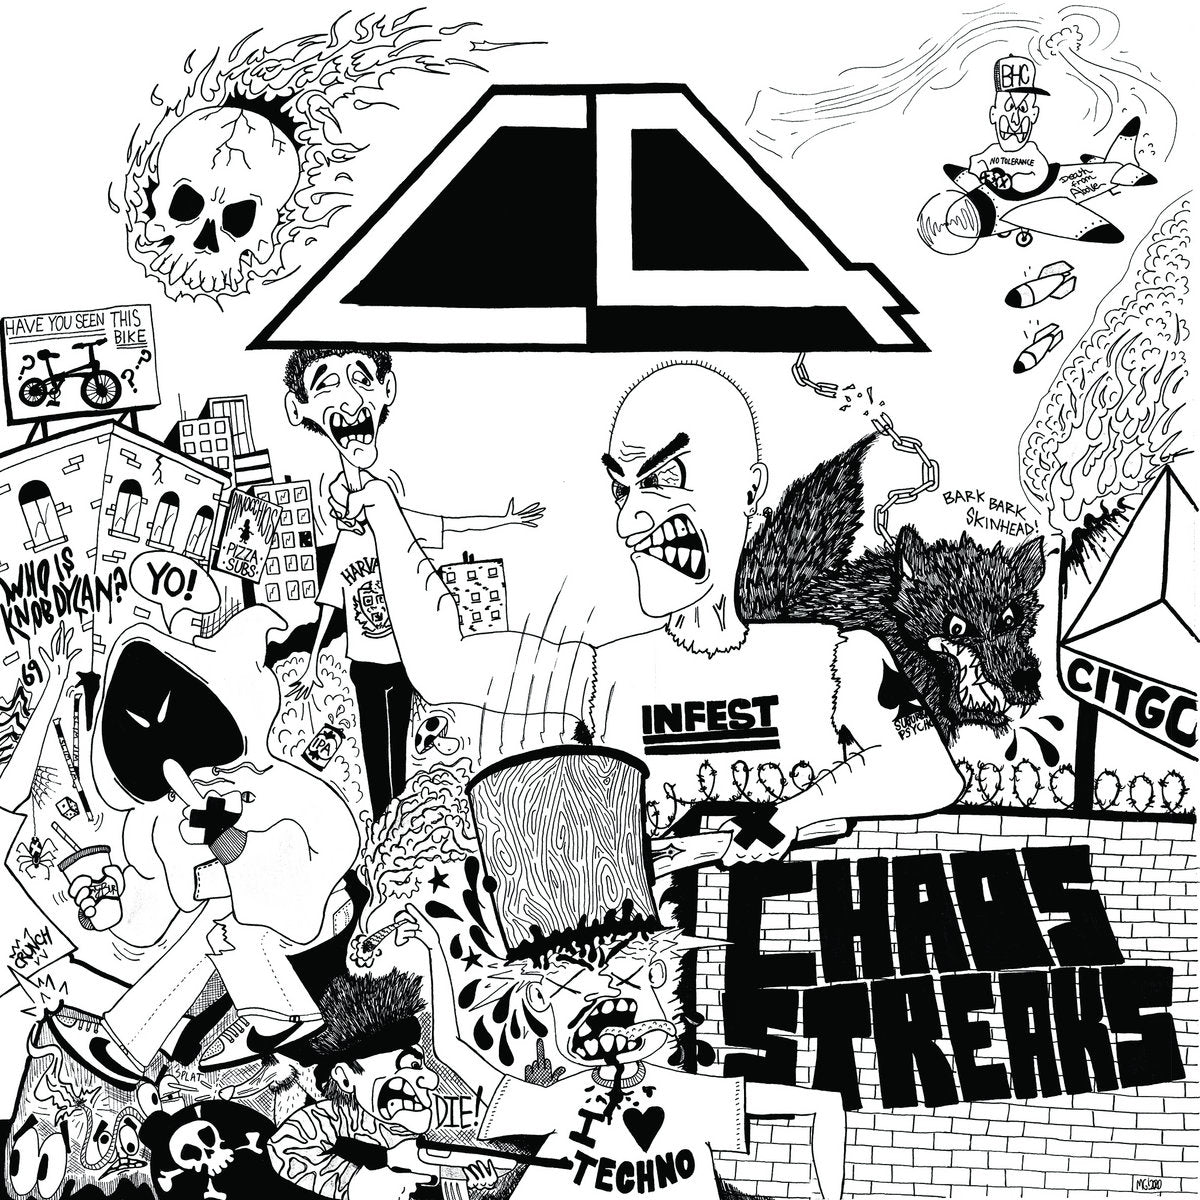 C4 'Chaos Streaks' LP